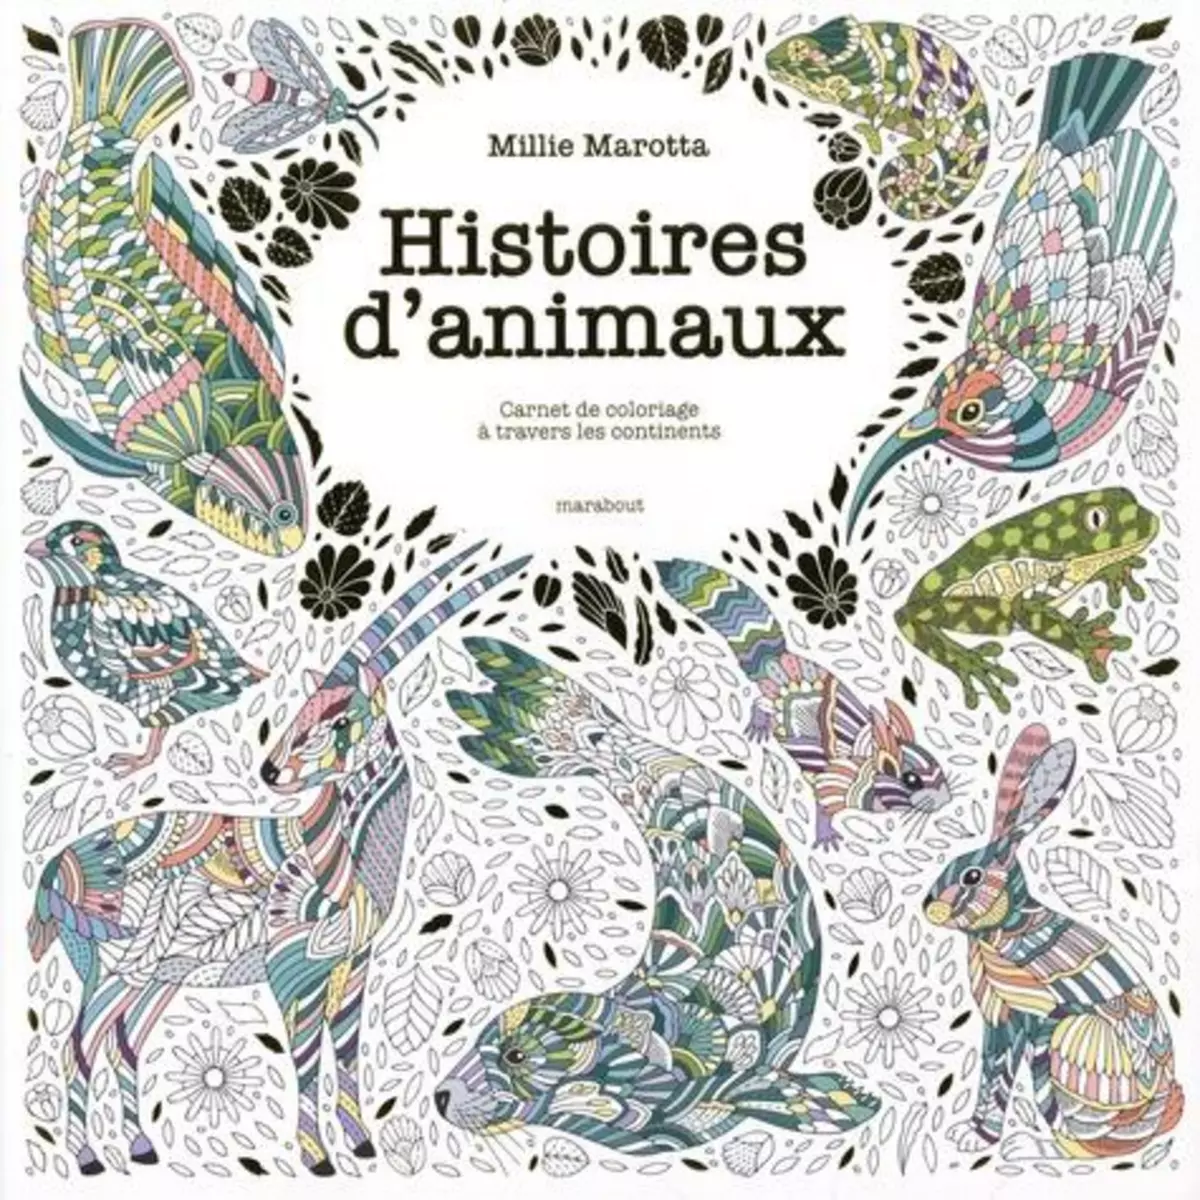  HISTOIRES D'ANIMAUX. CARNET DE COLORIAGE A TRAVERS LES CONTINENTS, Marotta Millie